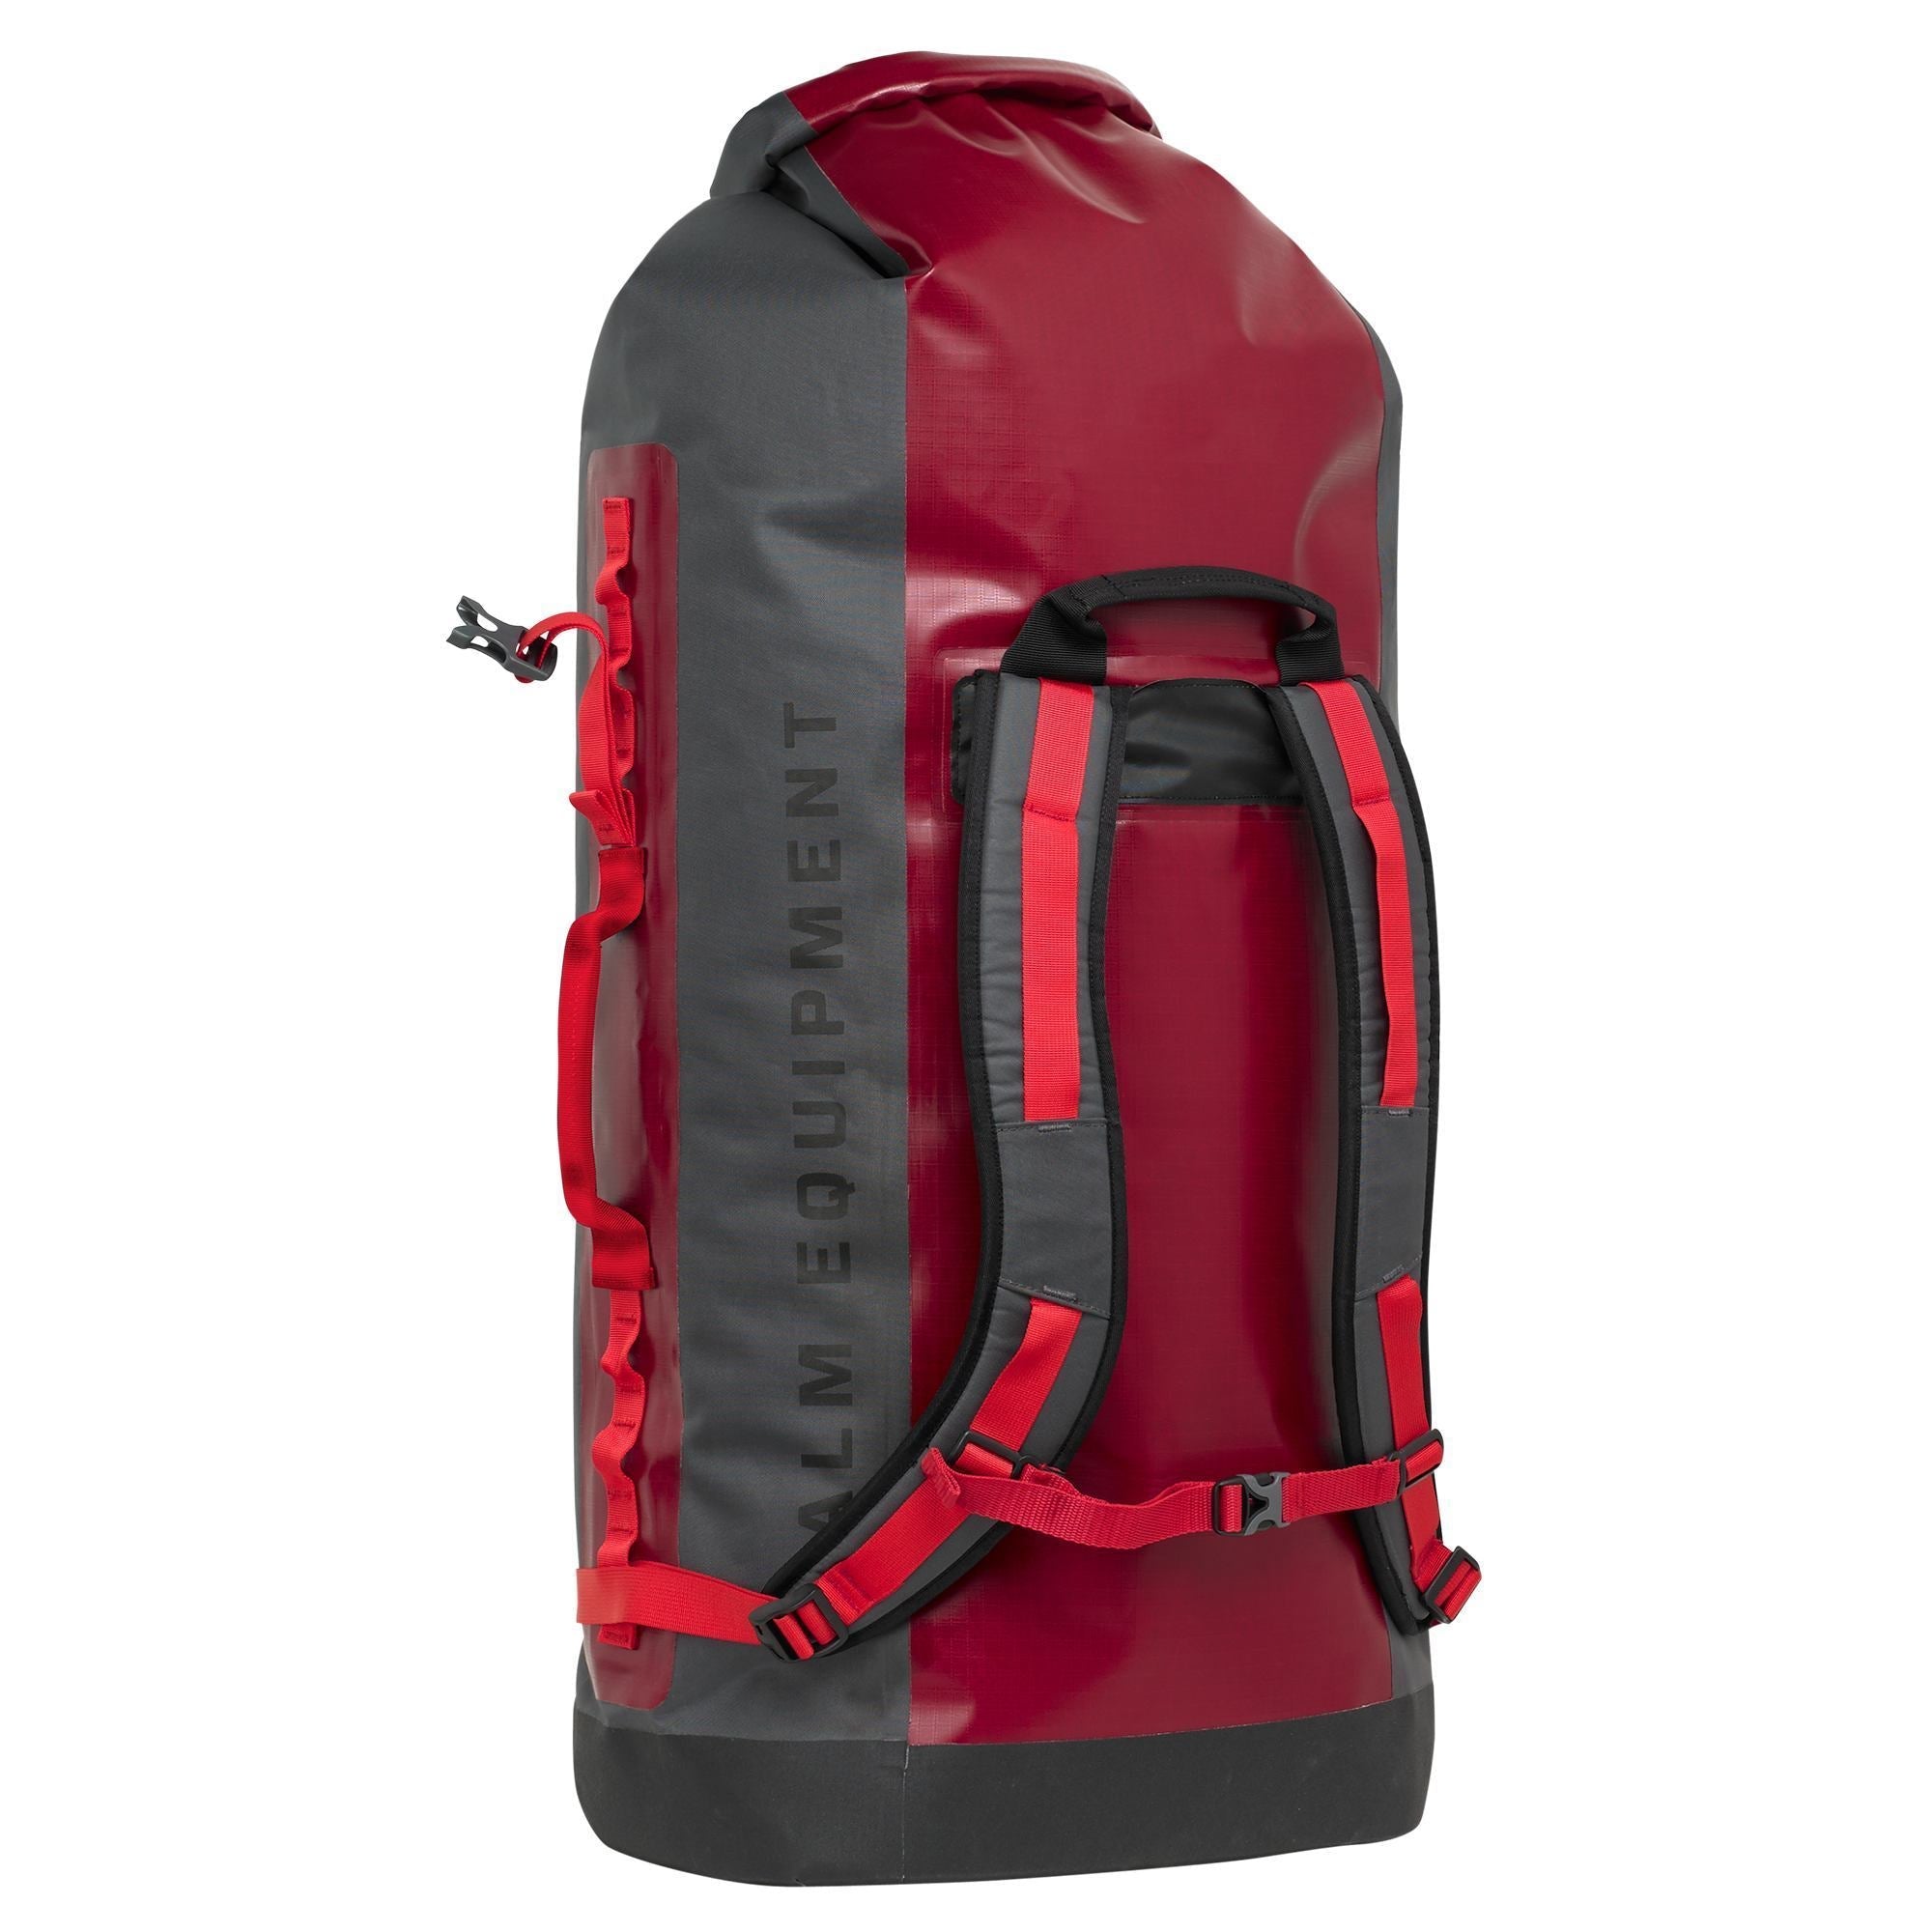 Palm River Trek Waterproof Backpack 100 L